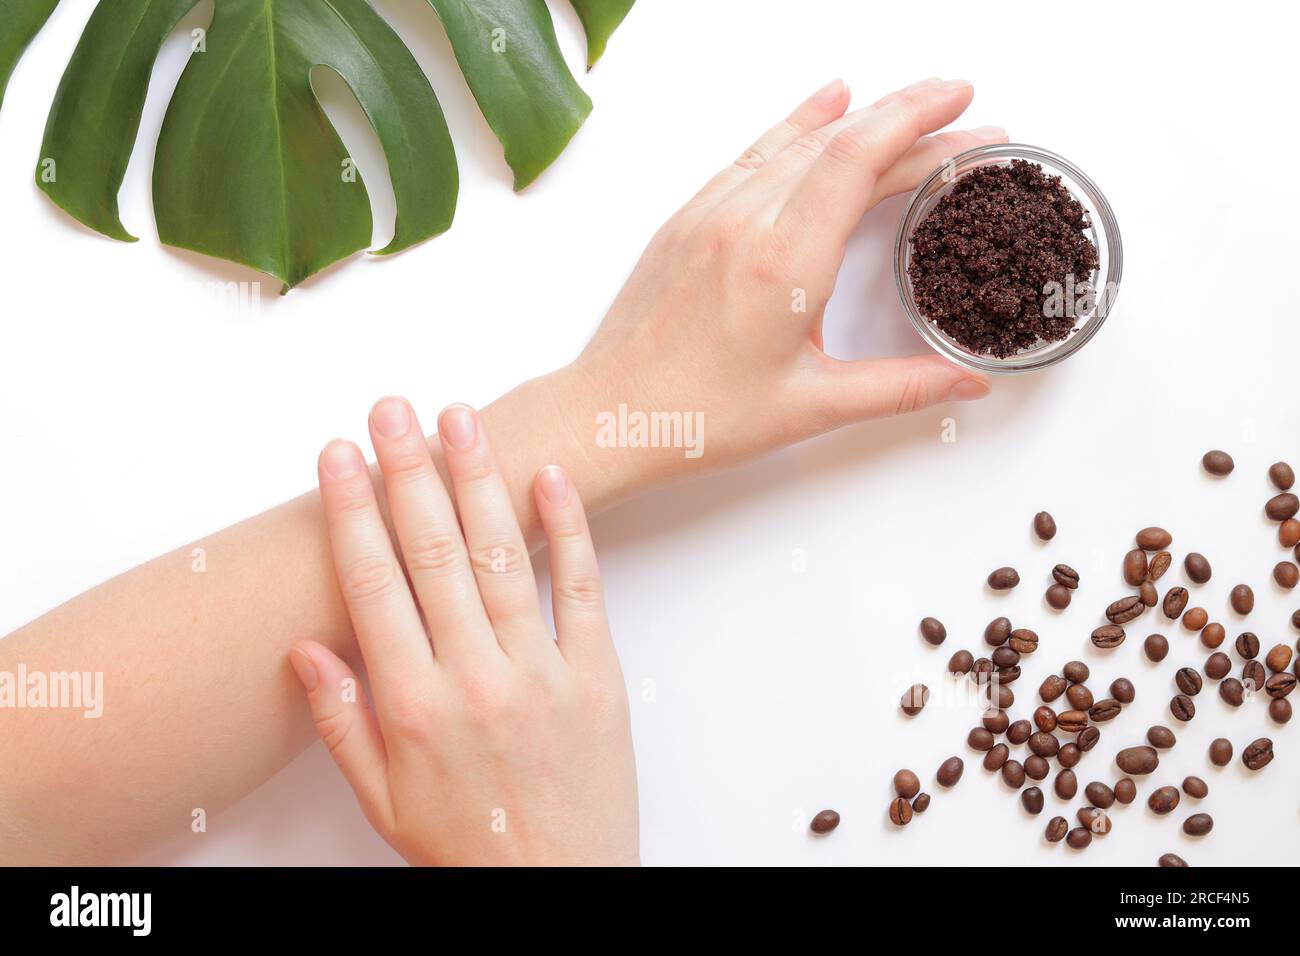 Frauenhände und Kaffee-Peeling auf der Haut. Der Begriff der Naturkosmetik. Flache Zusammensetzung von Kaffeespeeling, Händen, Kaffeebohnen und Monstera Stockfoto